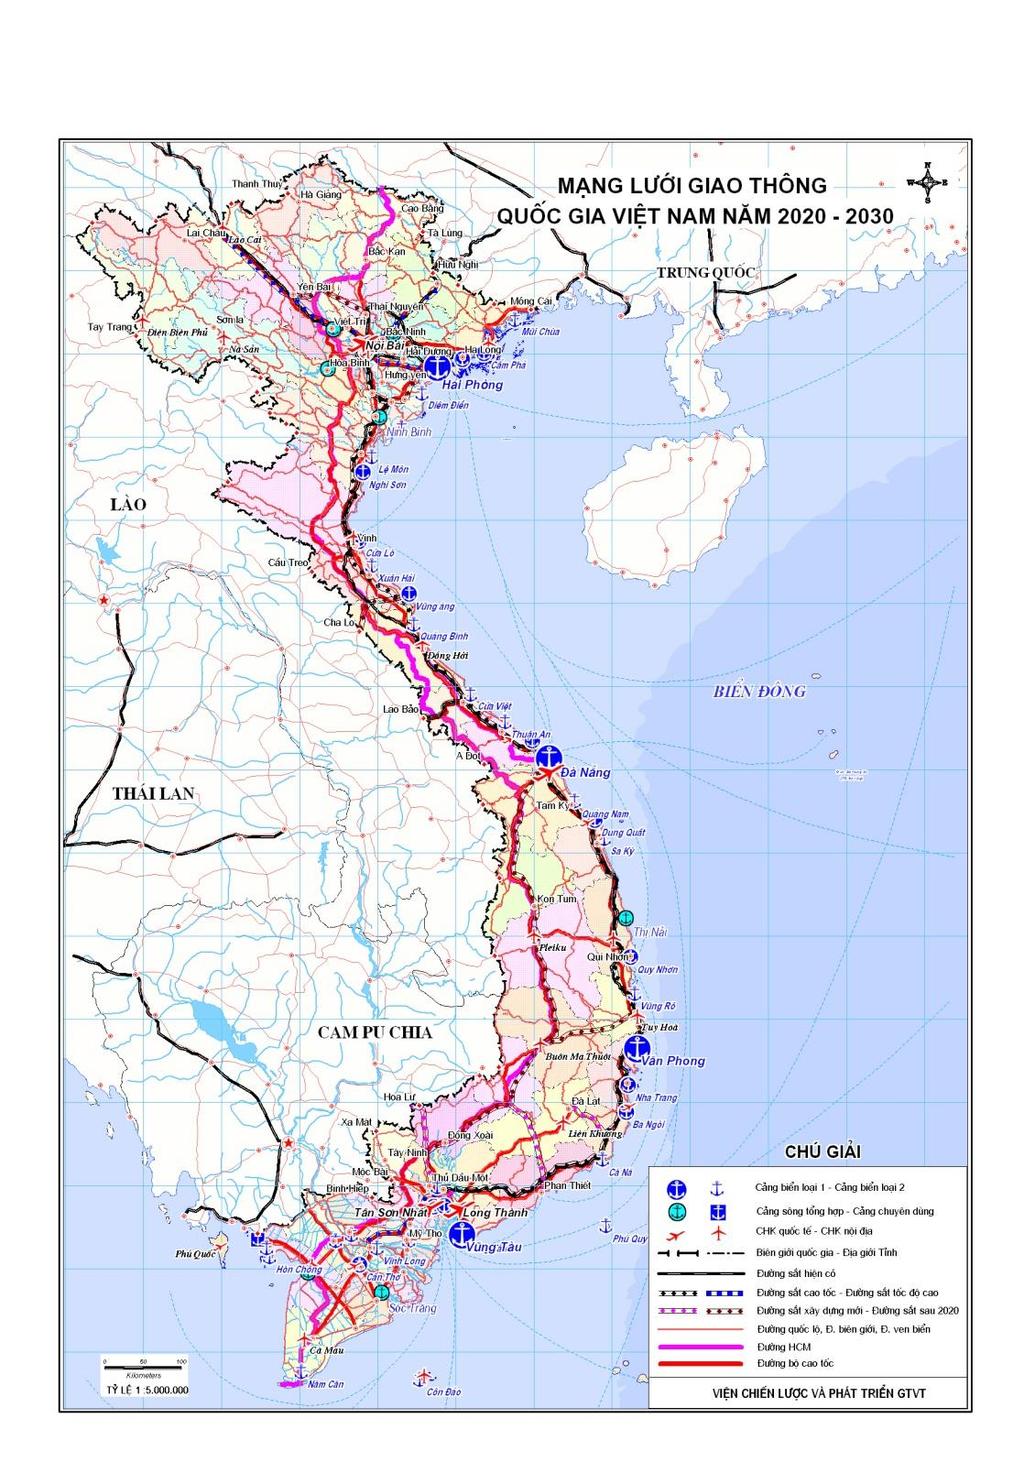 ROADS BY 2020: 2500 km EXPRESS WAYS